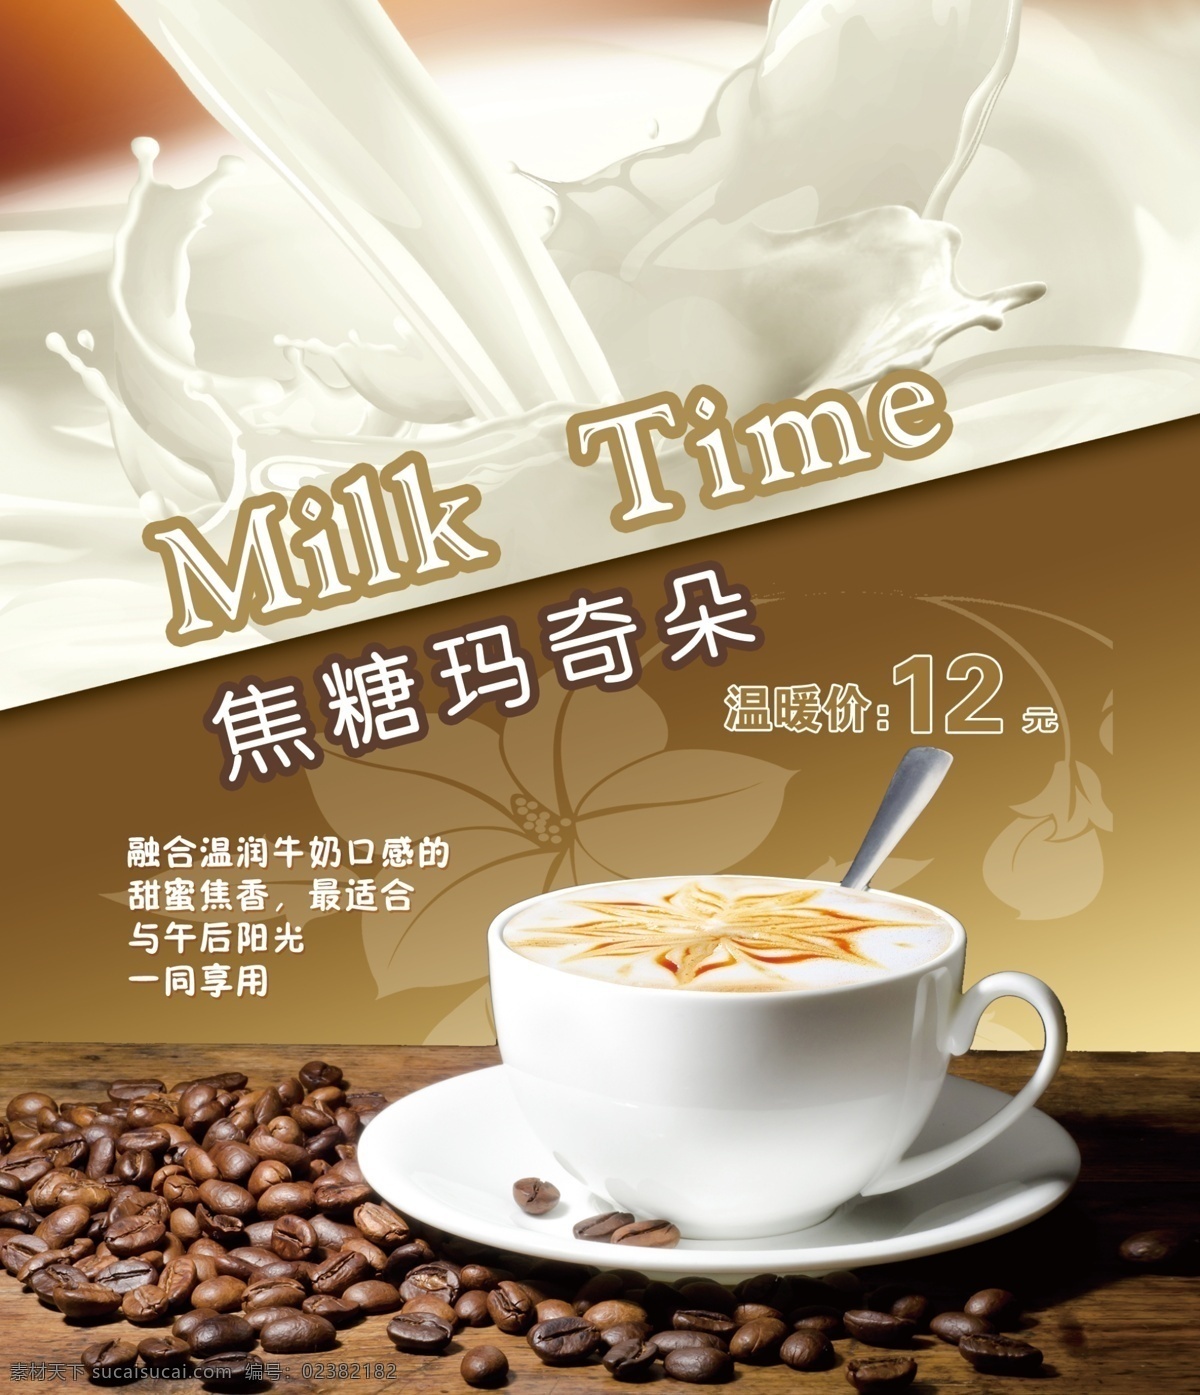 焦糖玛奇朵 奶茶 咖啡豆 古色桌子 奶 杯子 milktime 简约 印刷 标准 色 广告设计模板 源文件